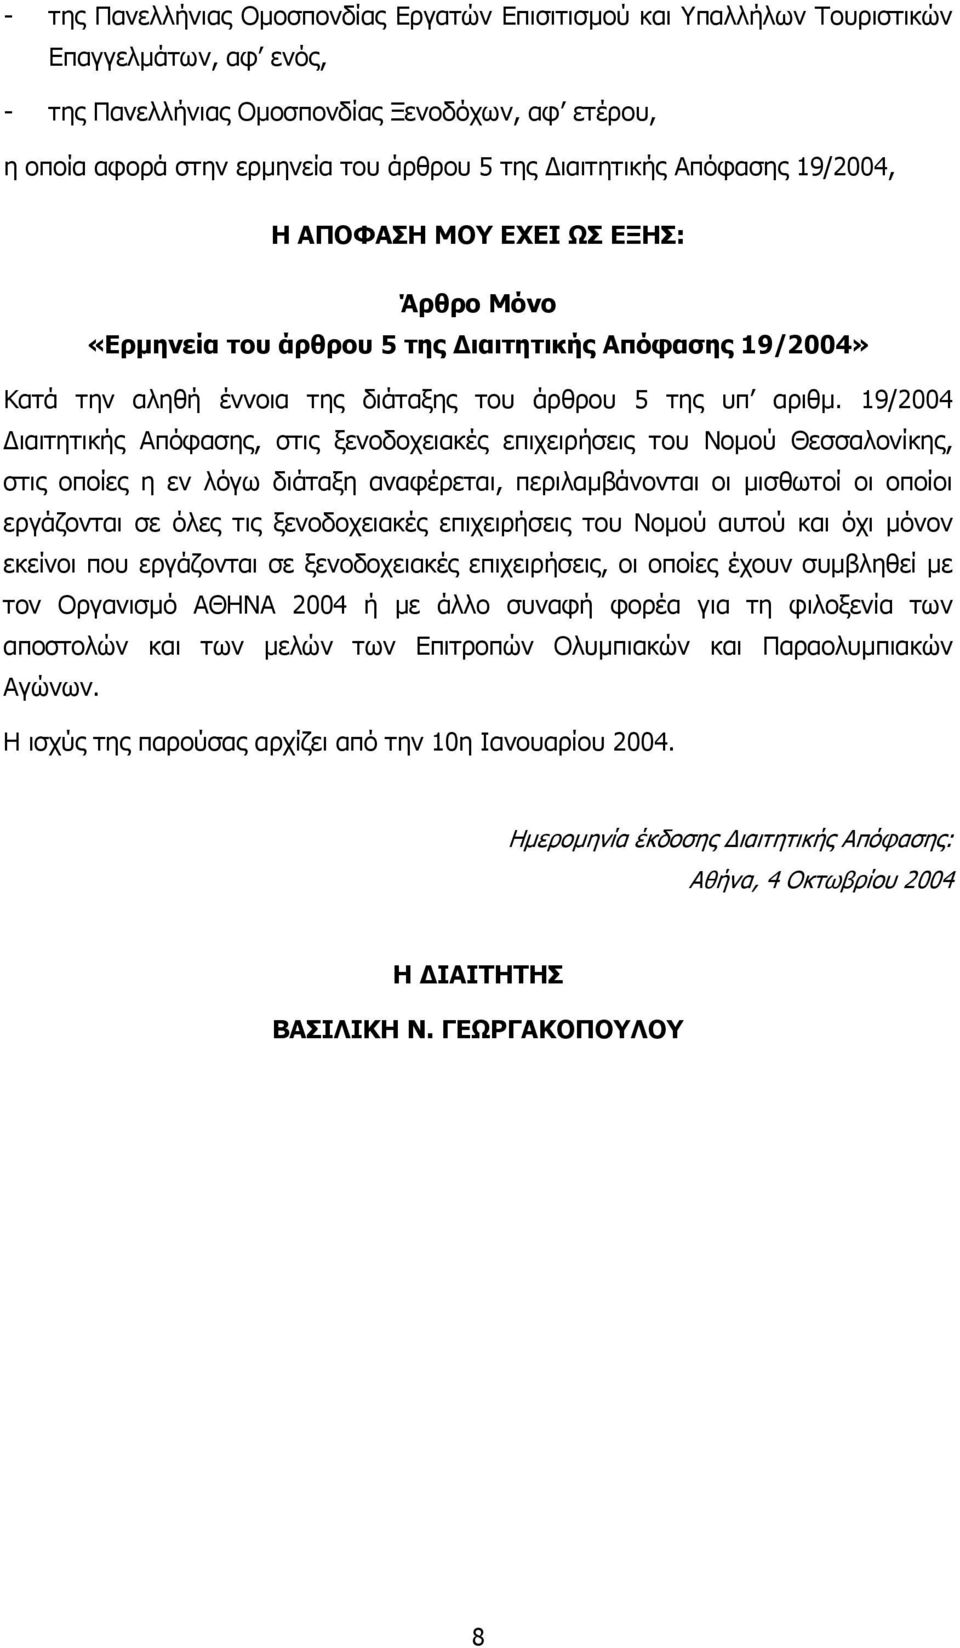 19/2004 ιαιτητικής Απόφασης, στις ξενοδοχειακές επιχειρήσεις του Νοµού Θεσσαλονίκης, στις οποίες η εν λόγω διάταξη αναφέρεται, περιλαµβάνονται οι µισθωτοί οι οποίοι εργάζονται σε όλες τις